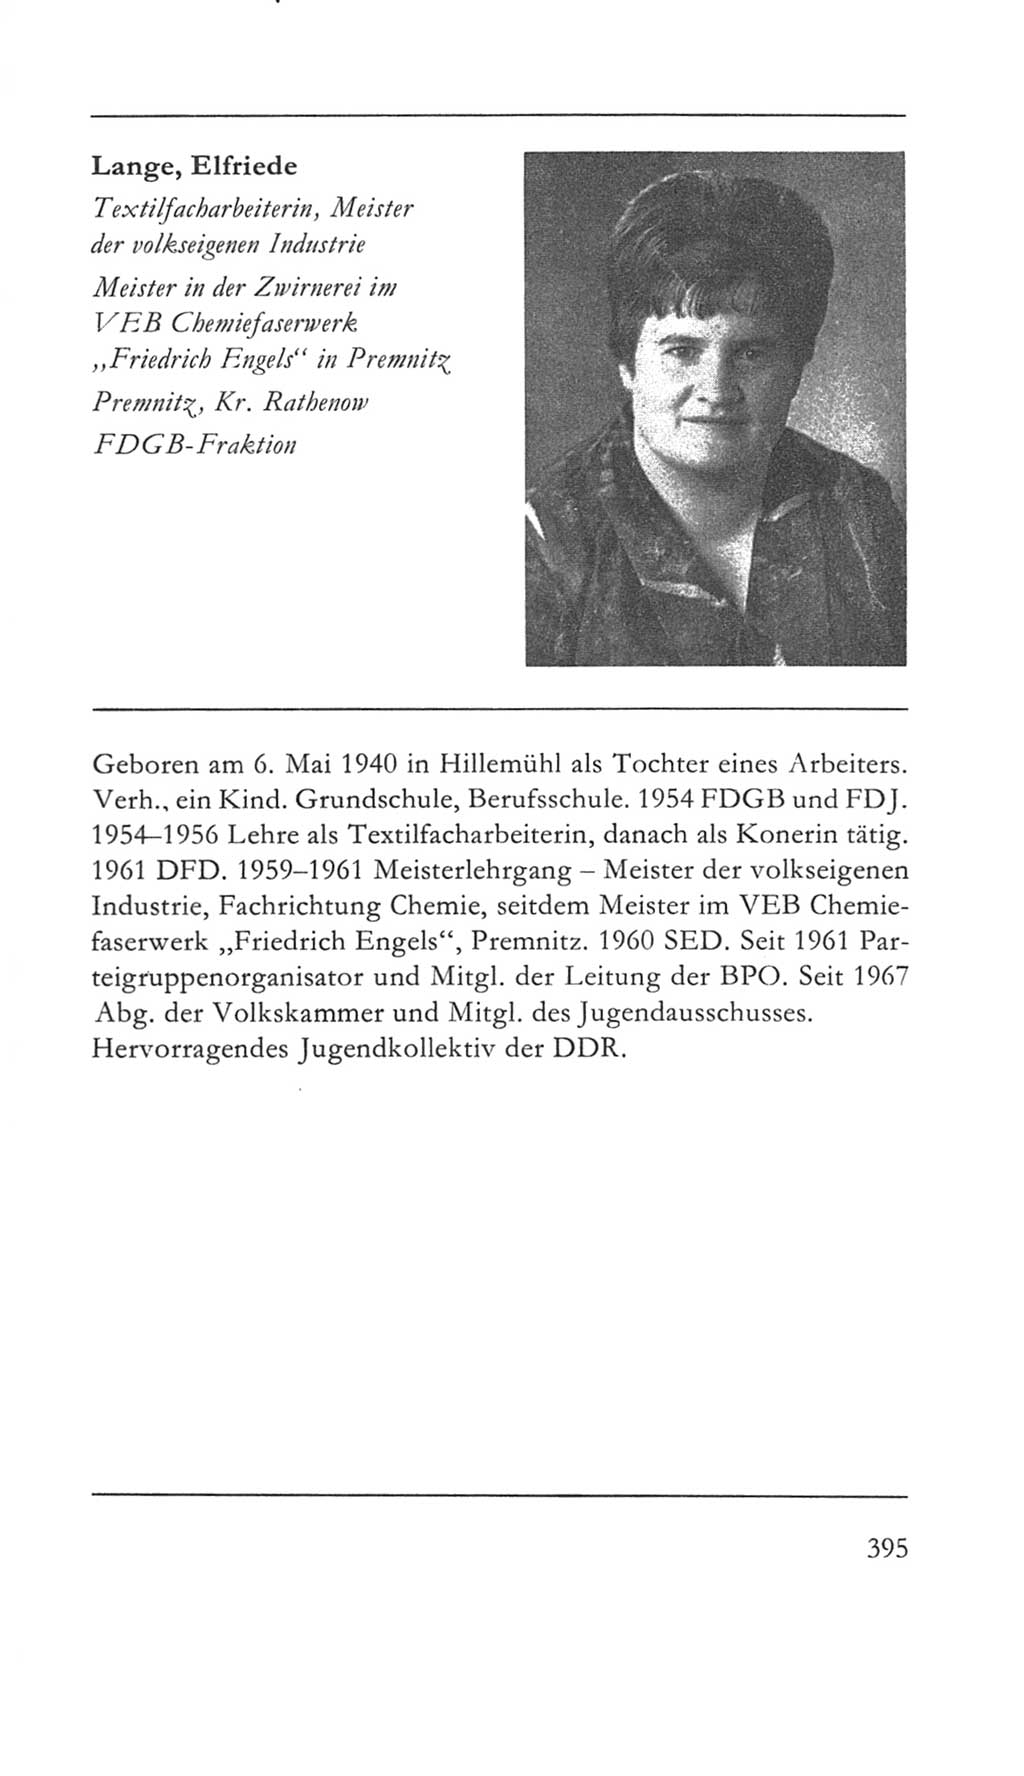 Volkskammer (VK) der Deutschen Demokratischen Republik (DDR) 5. Wahlperiode 1967-1971, Seite 395 (VK. DDR 5. WP. 1967-1971, S. 395)